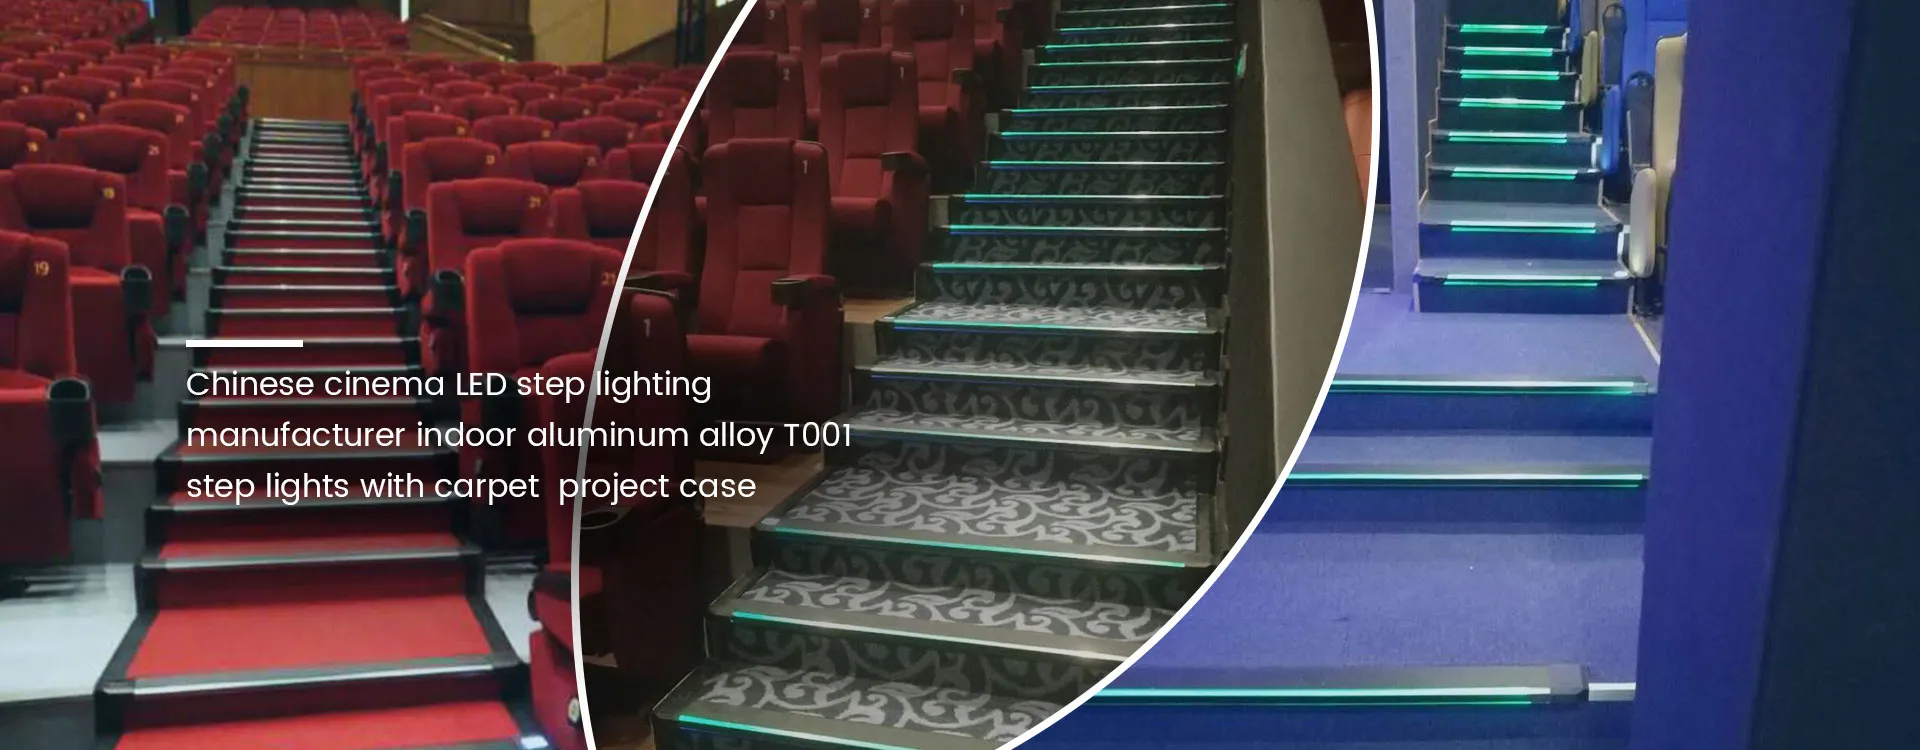 Cinema LED Step Lighting Manufacturer